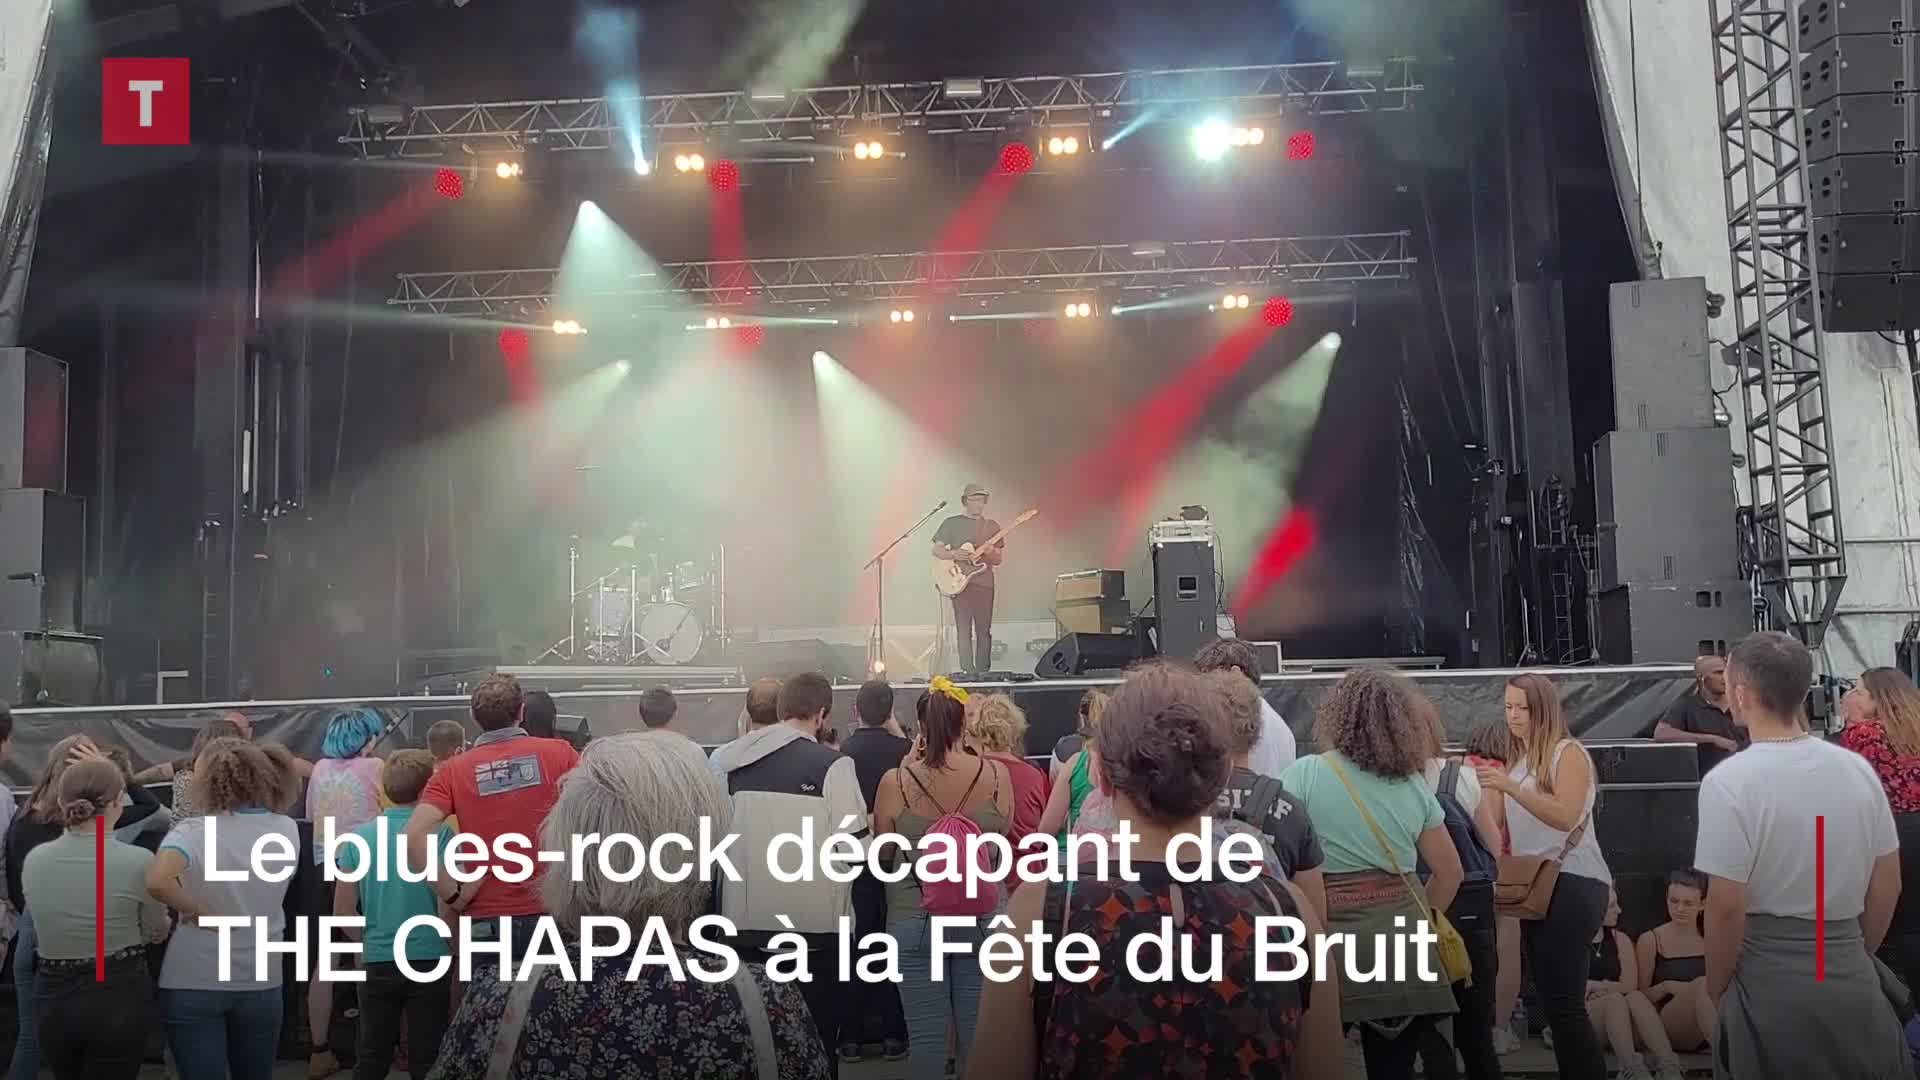 Fête du bruit dans Landerneau : du blues-rock décapant avec THE CHAPAS (Le Télégramme)